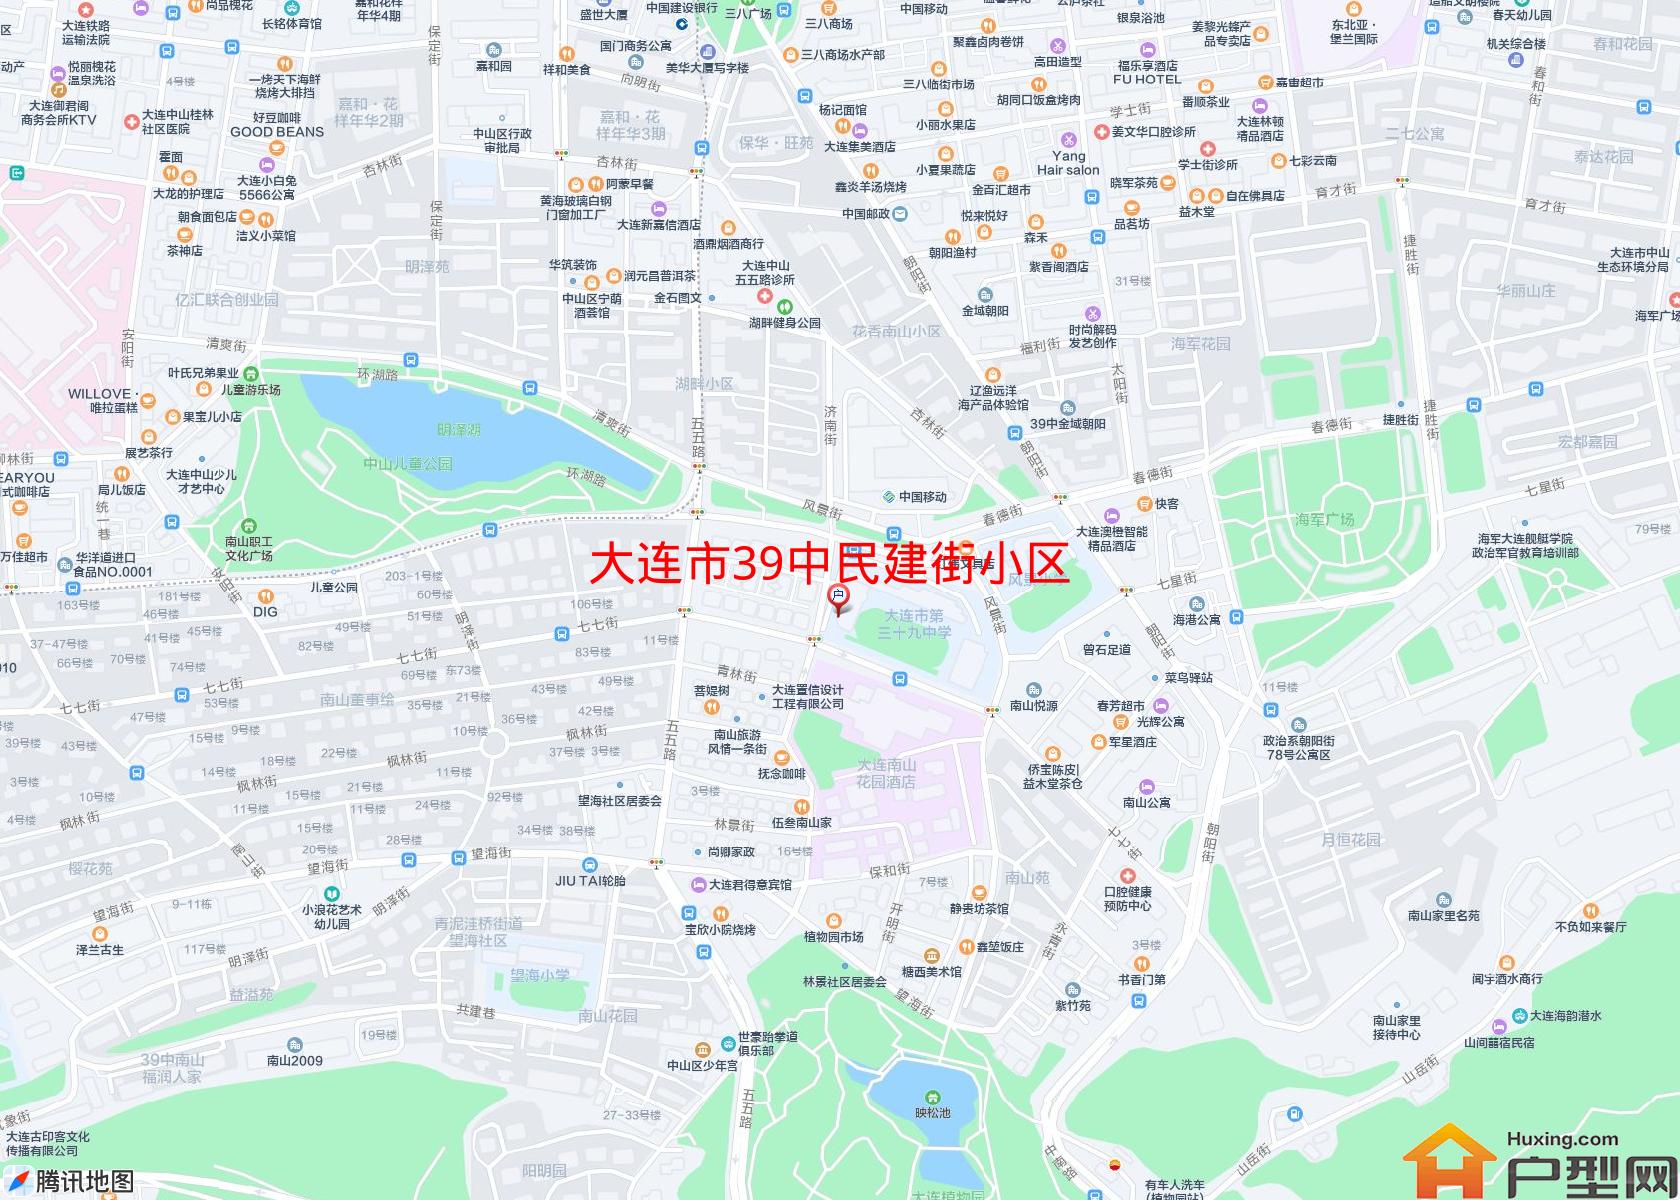 39中民建街小区小区 - 户型网